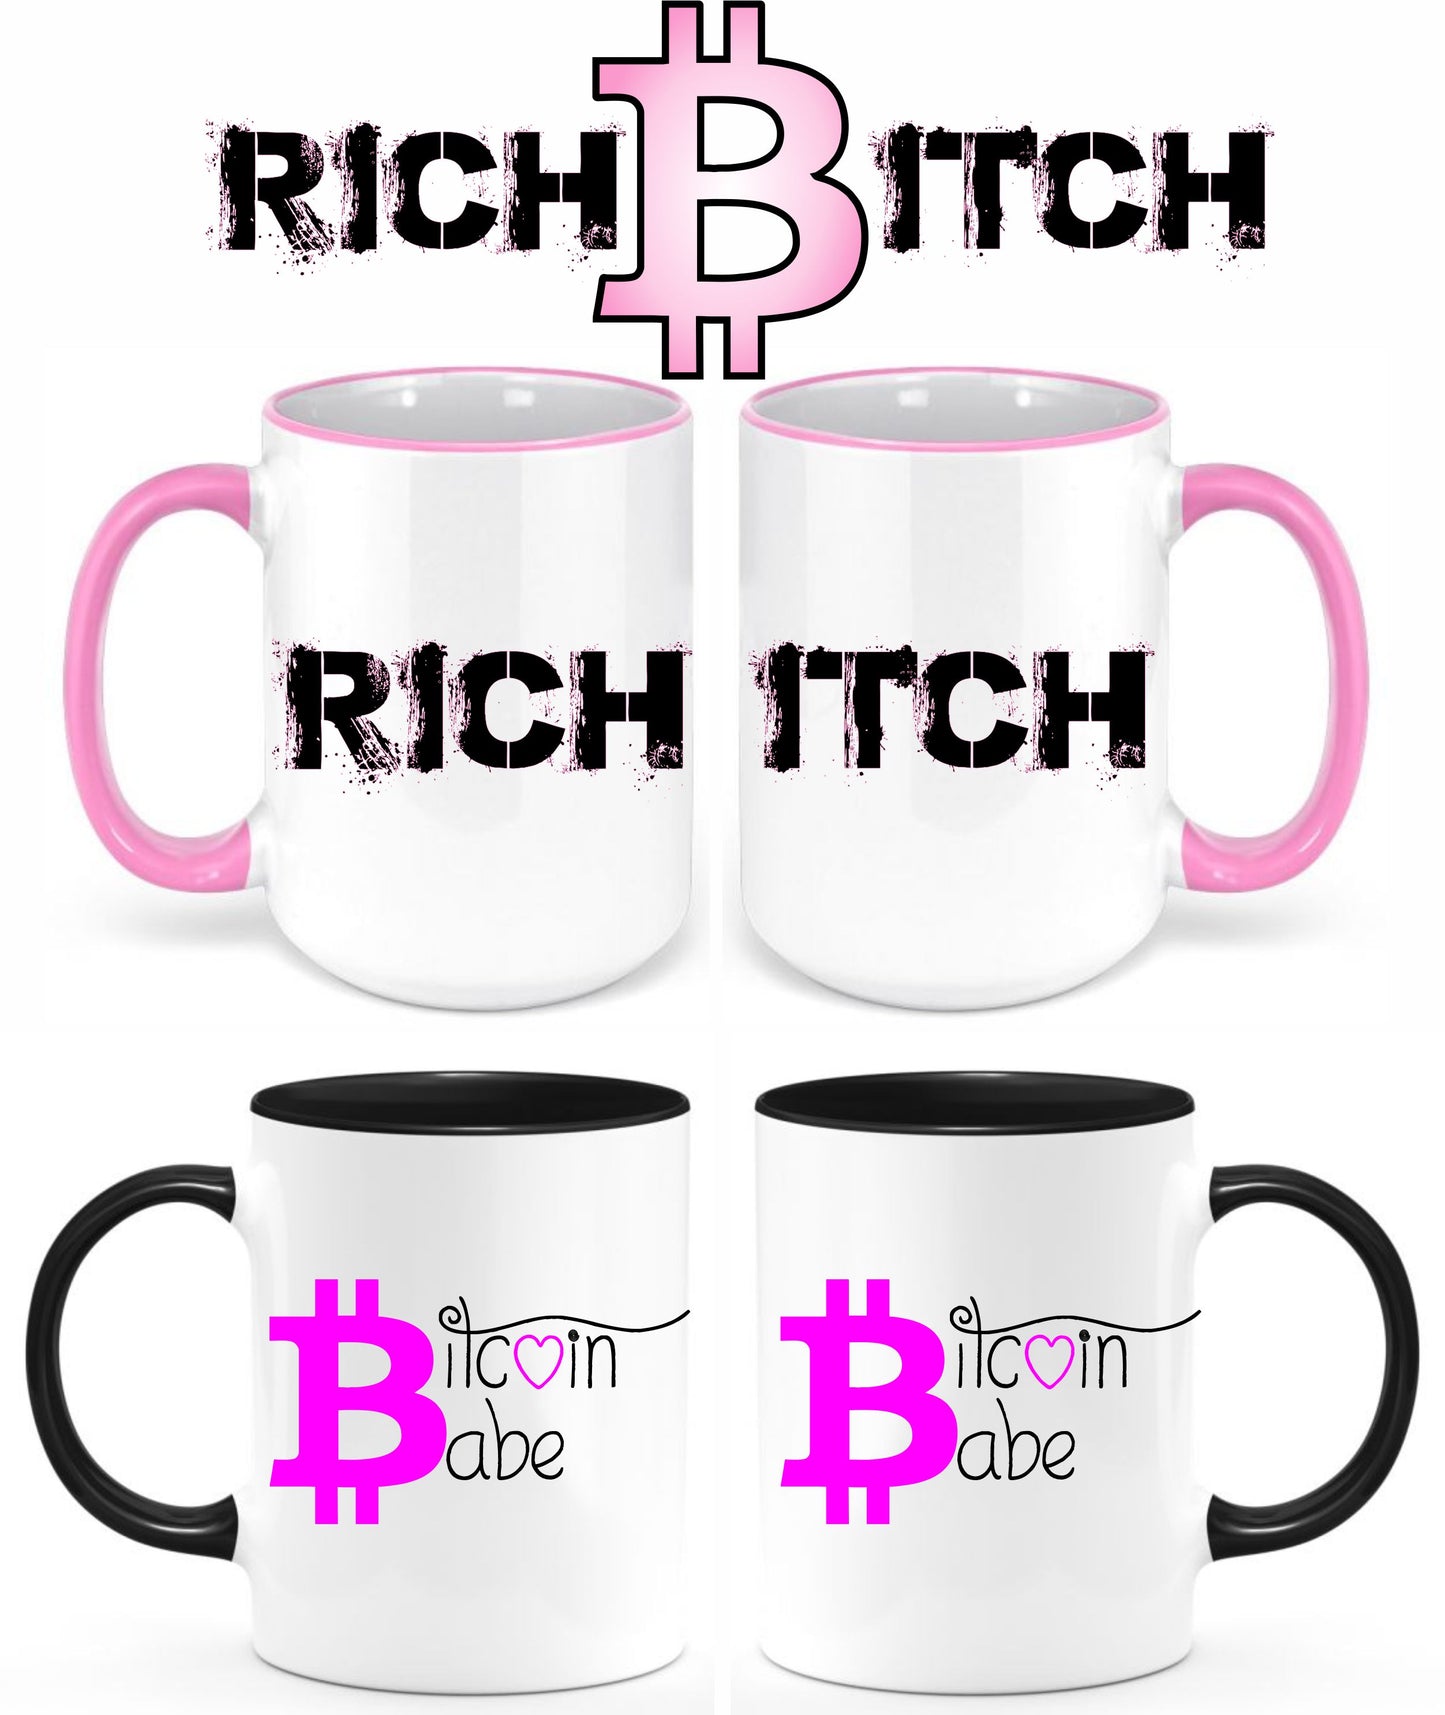 Rich Bitch, Bitcoin Babe coffee mug